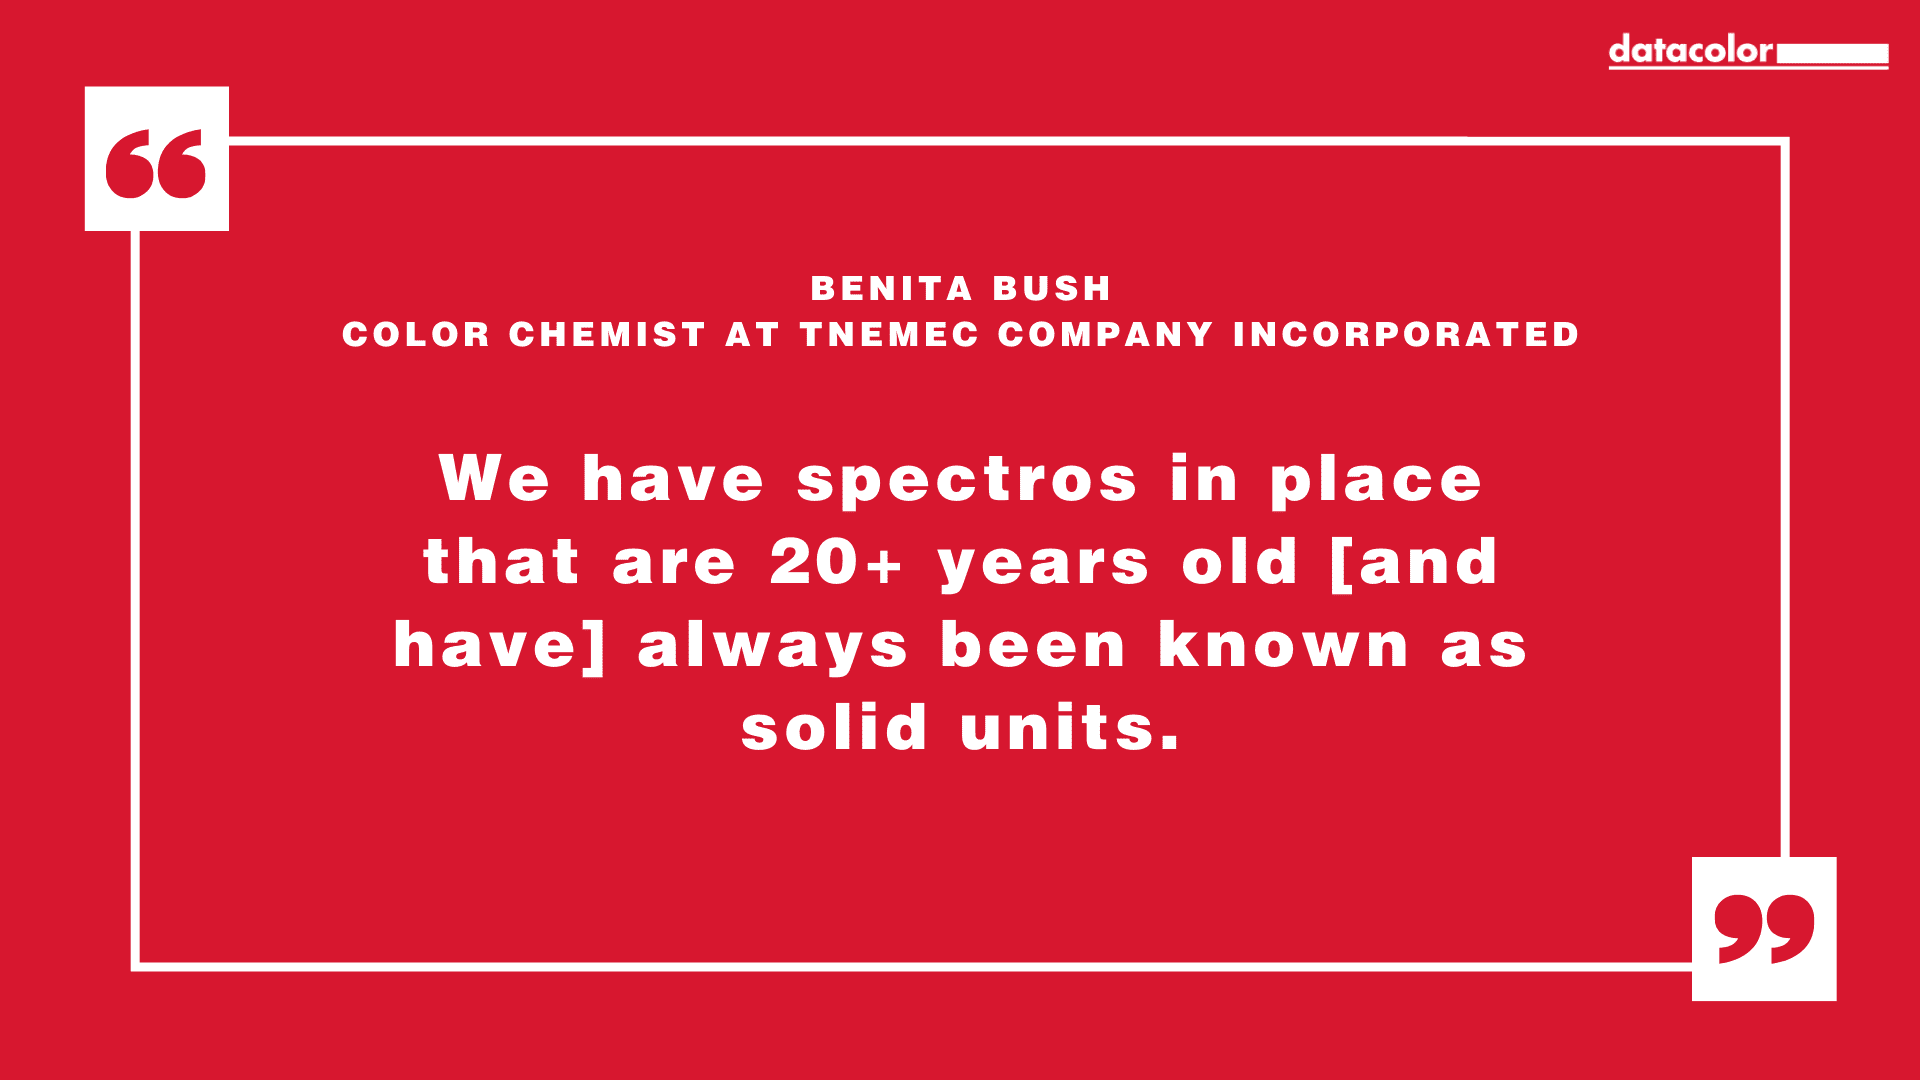 Citazione di Benita Bush, chimico del colore presso Tnemec Company Incorporated